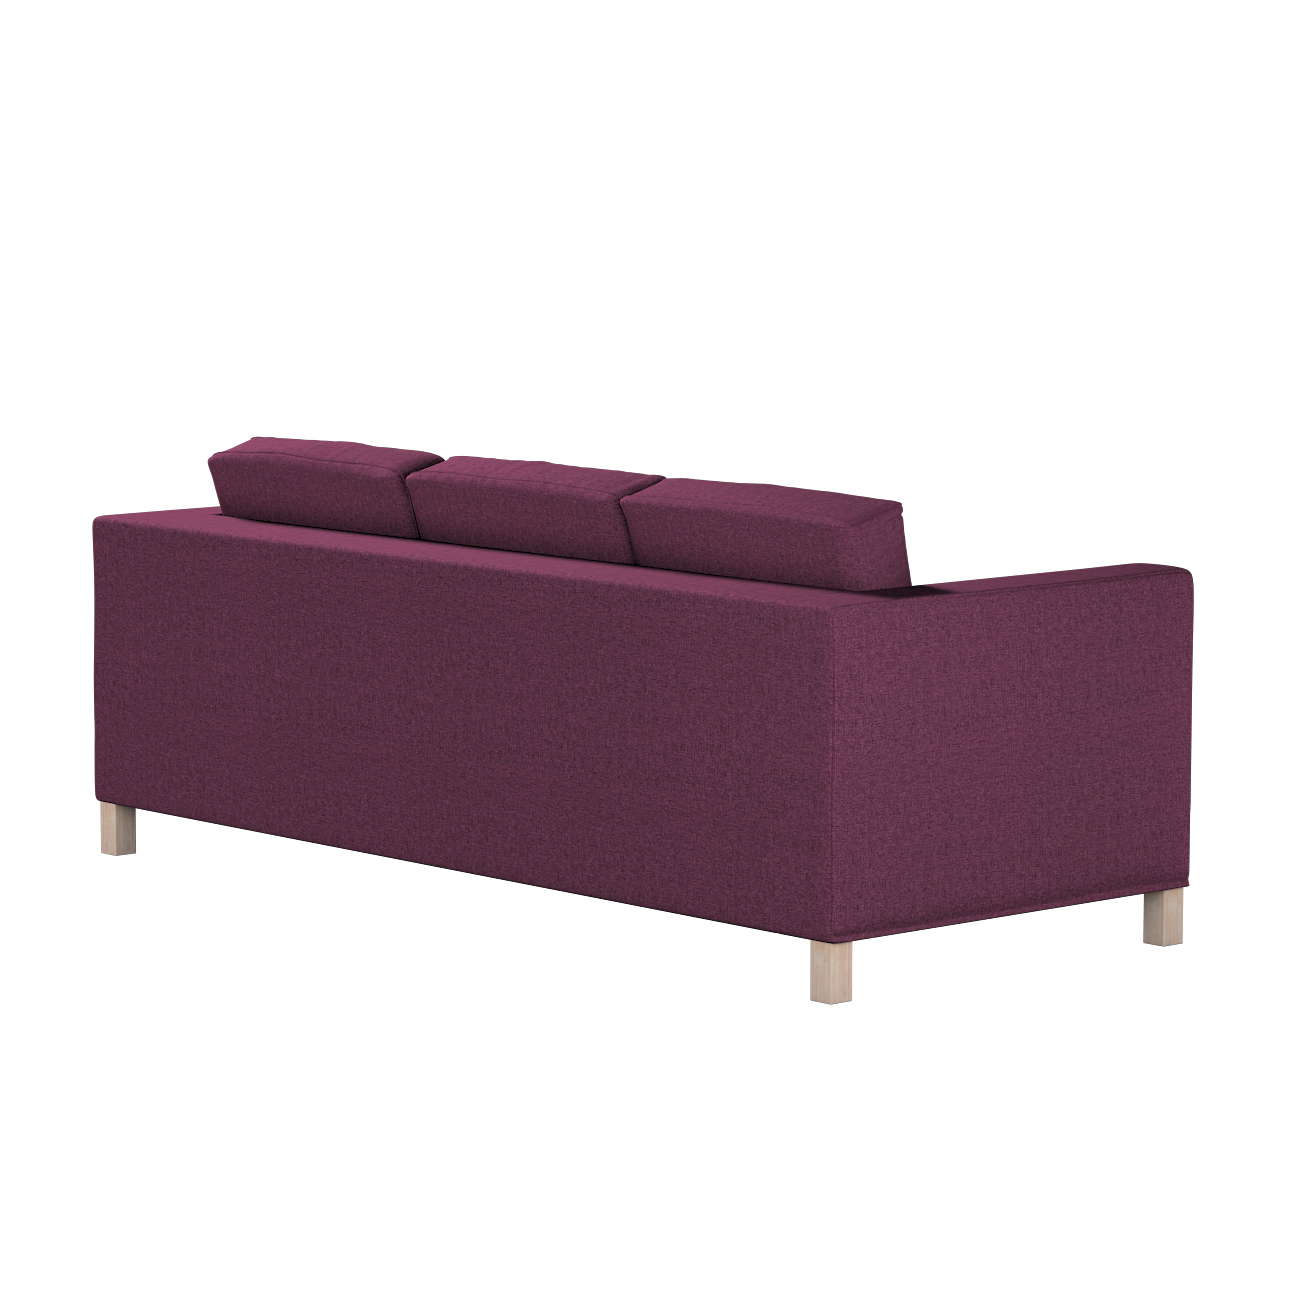 Bezug für Karlanda 3-Sitzer Sofa nicht ausklappbar, kurz, pflaumenviolett, günstig online kaufen